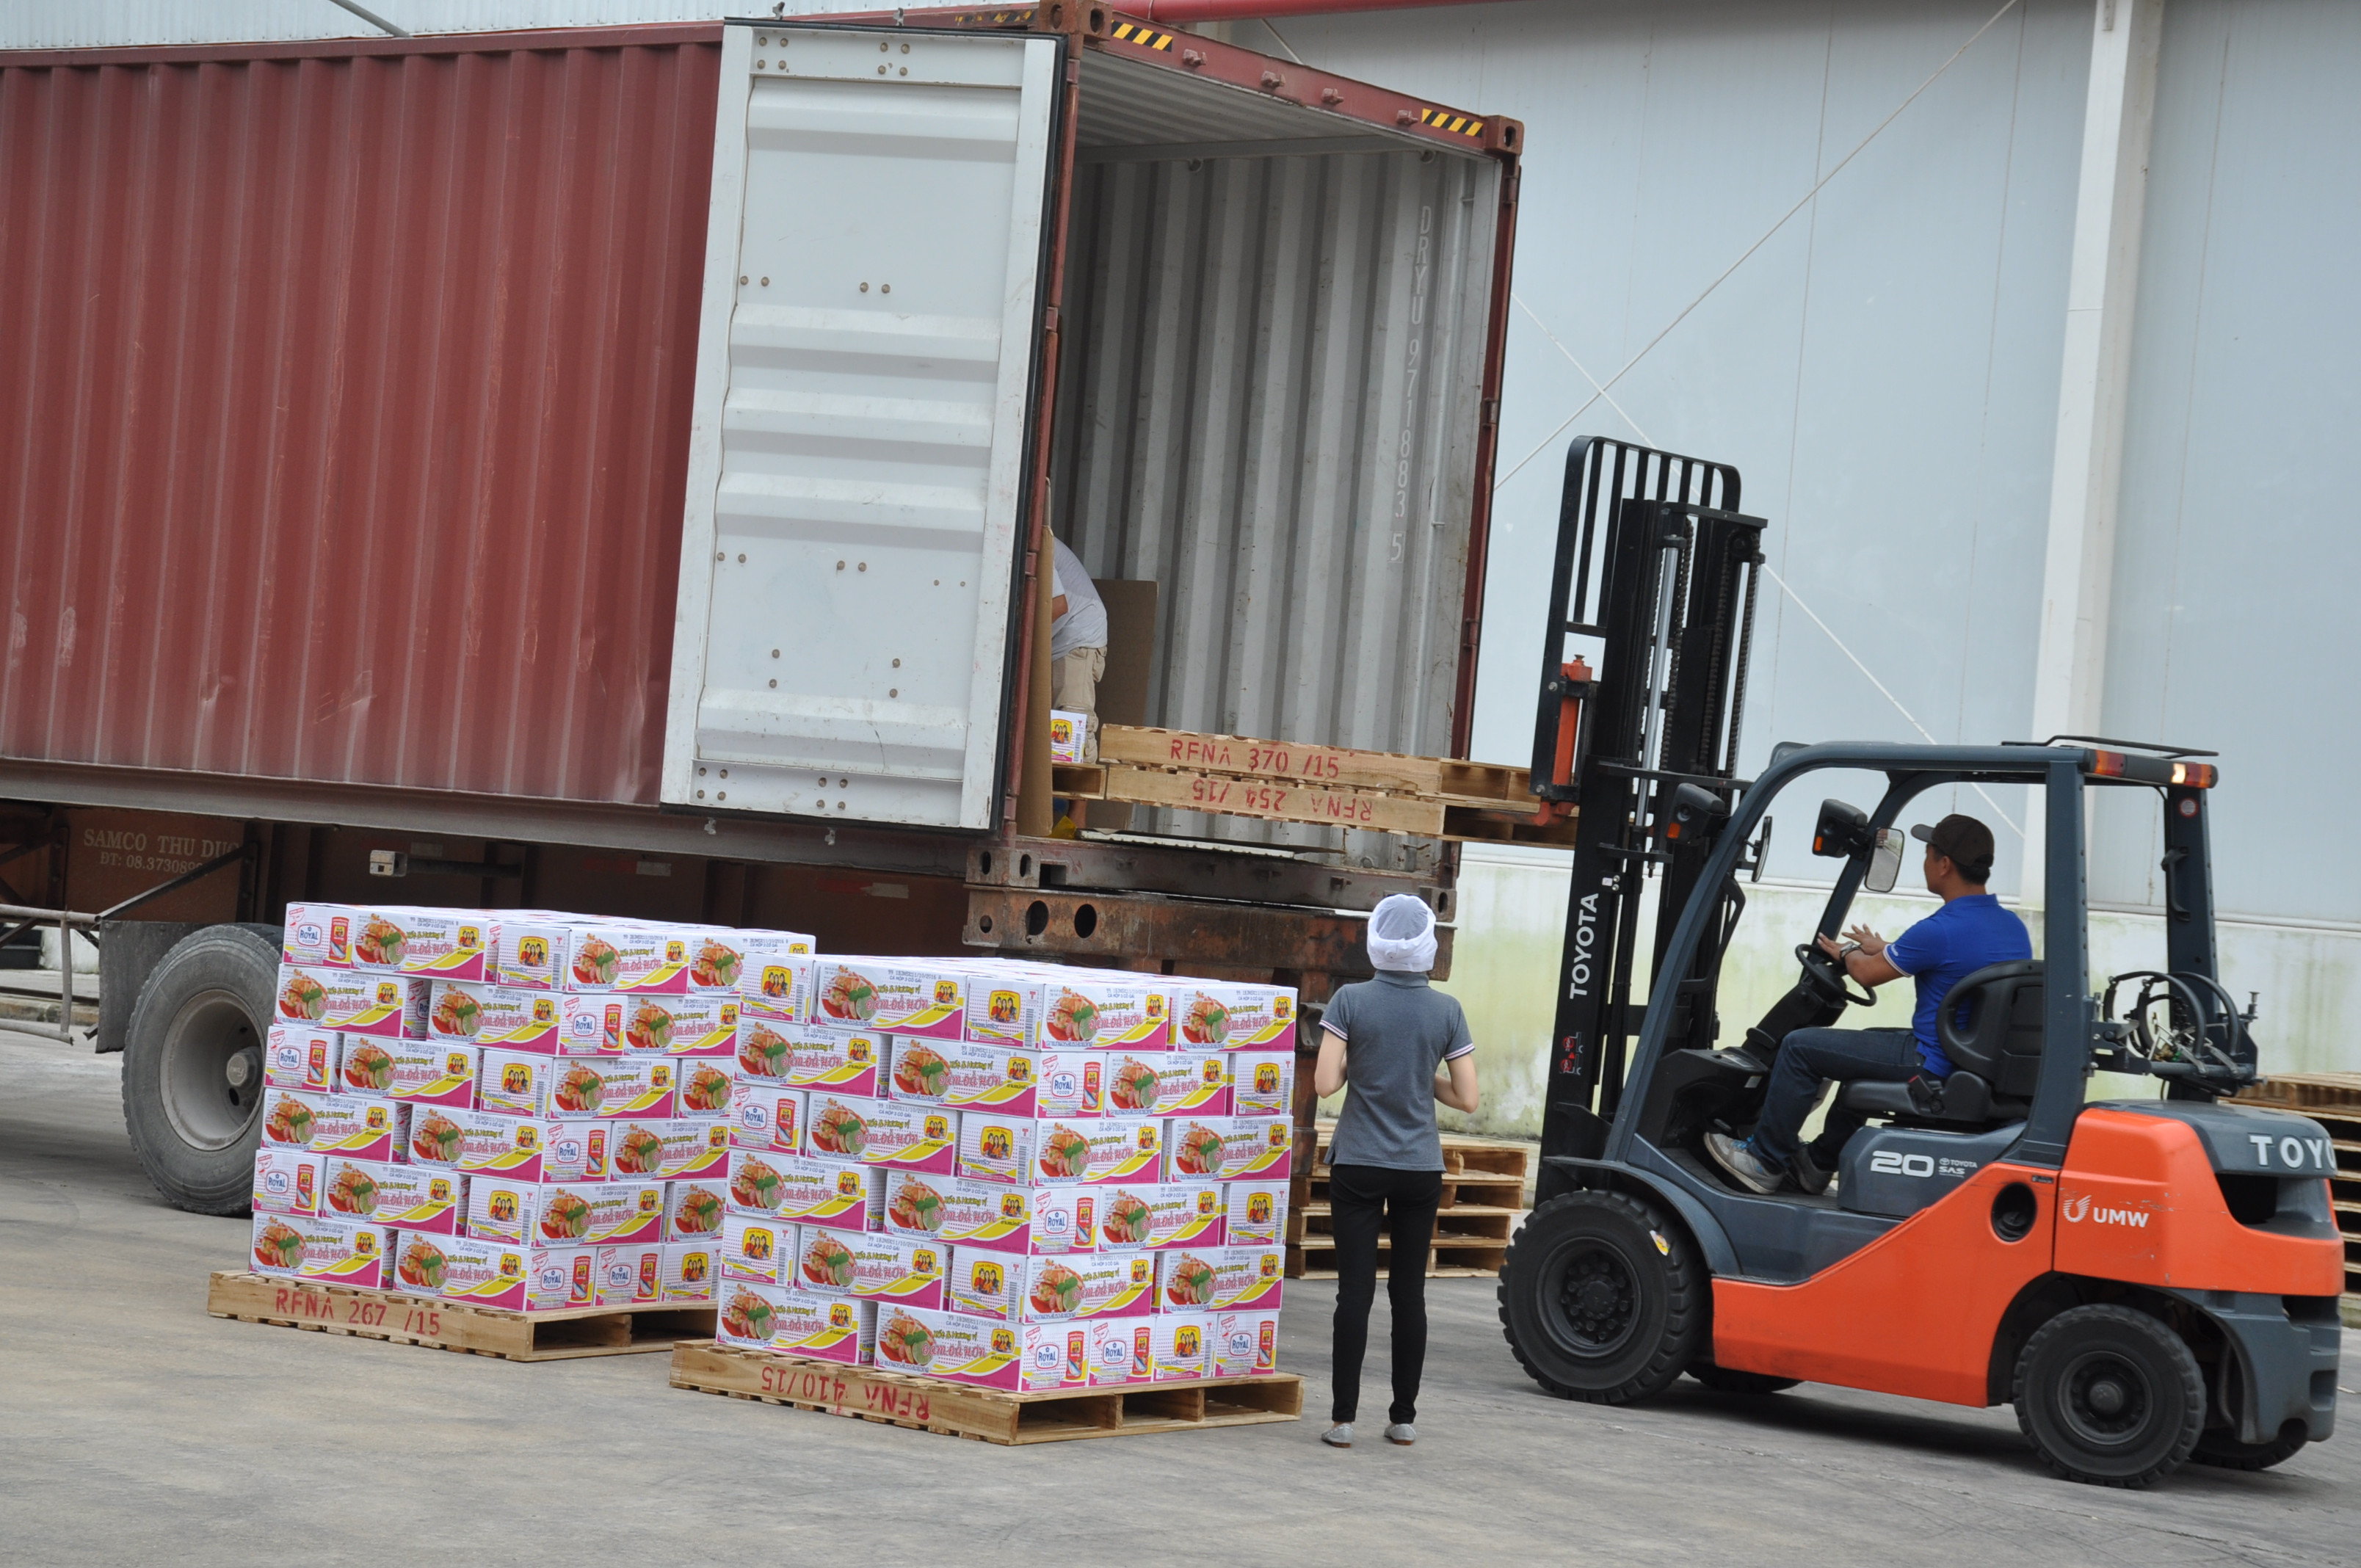 bna_sản xuất cá hộp xuất khẩu tại nhà máy Royal food, KCN Nam Cấm ảnh thu huyền.JPG